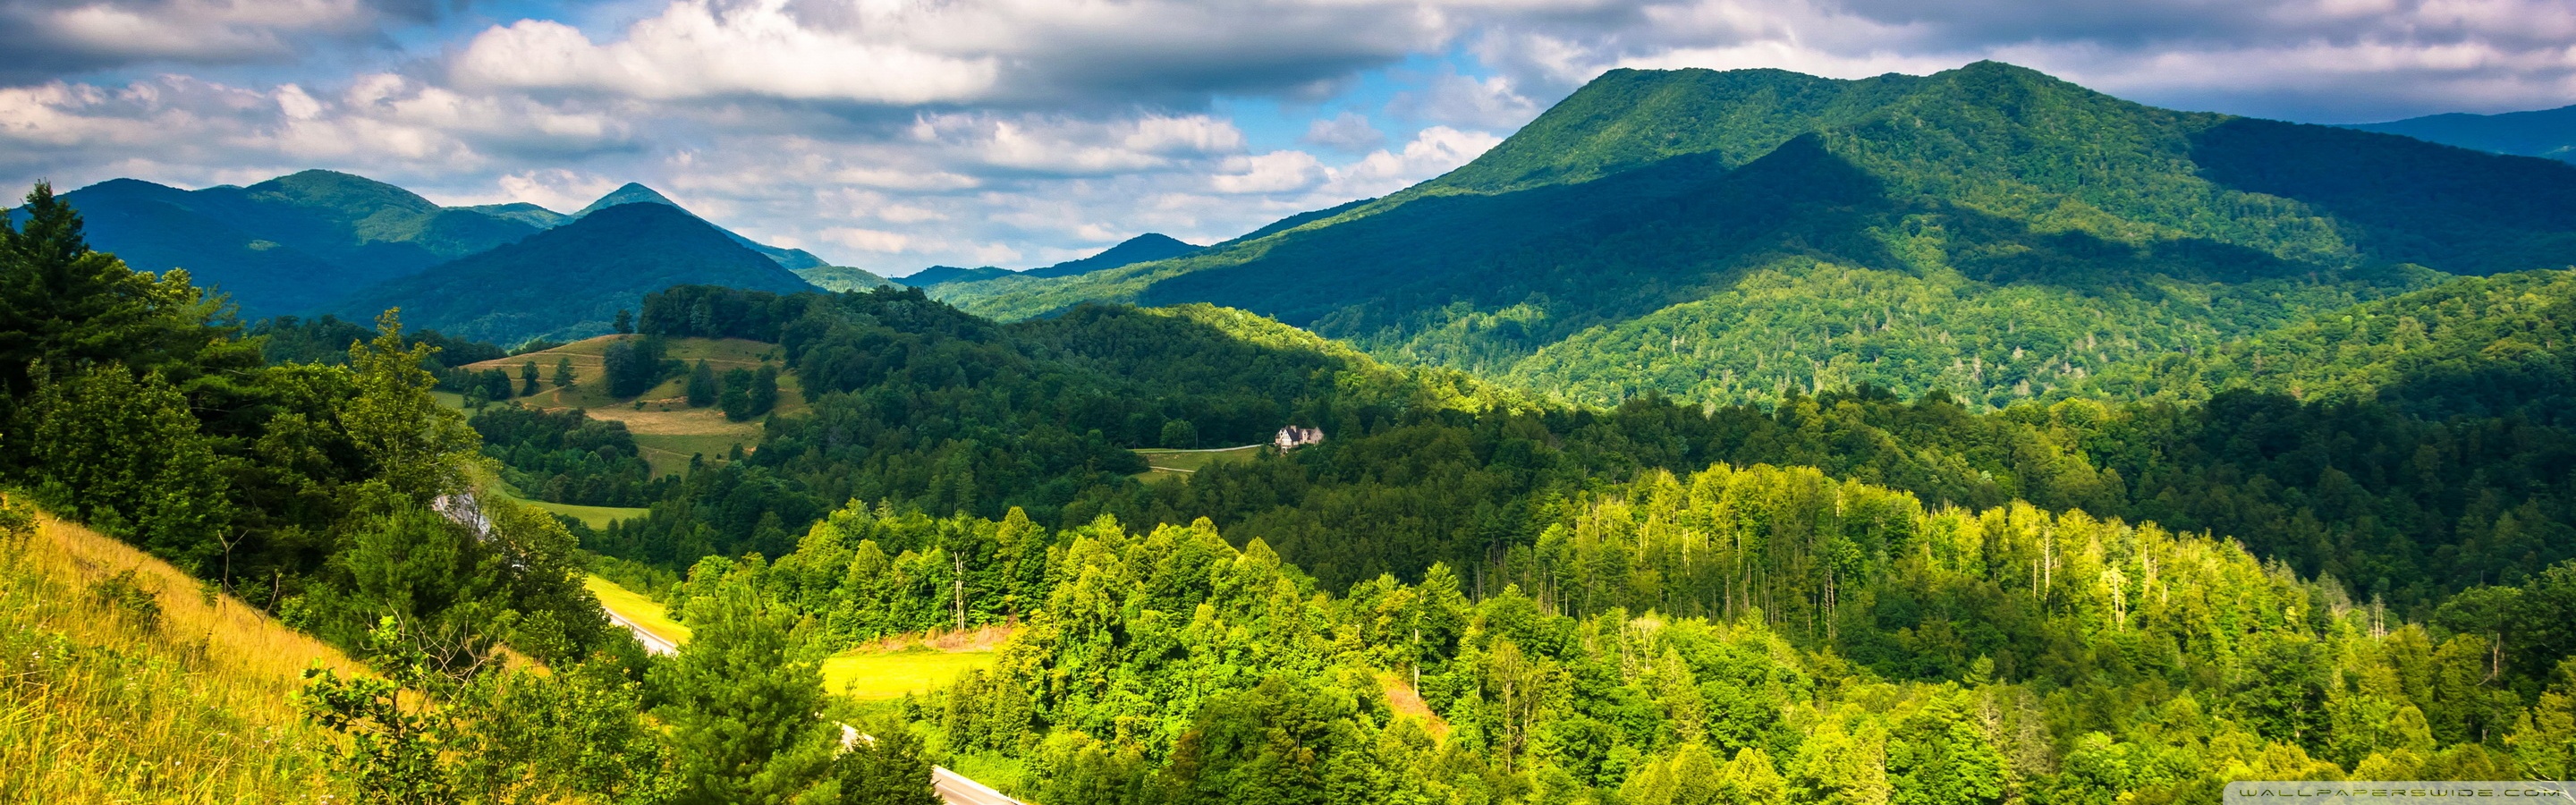 Free download Appalachian Mountains USA 4K HD Desktop